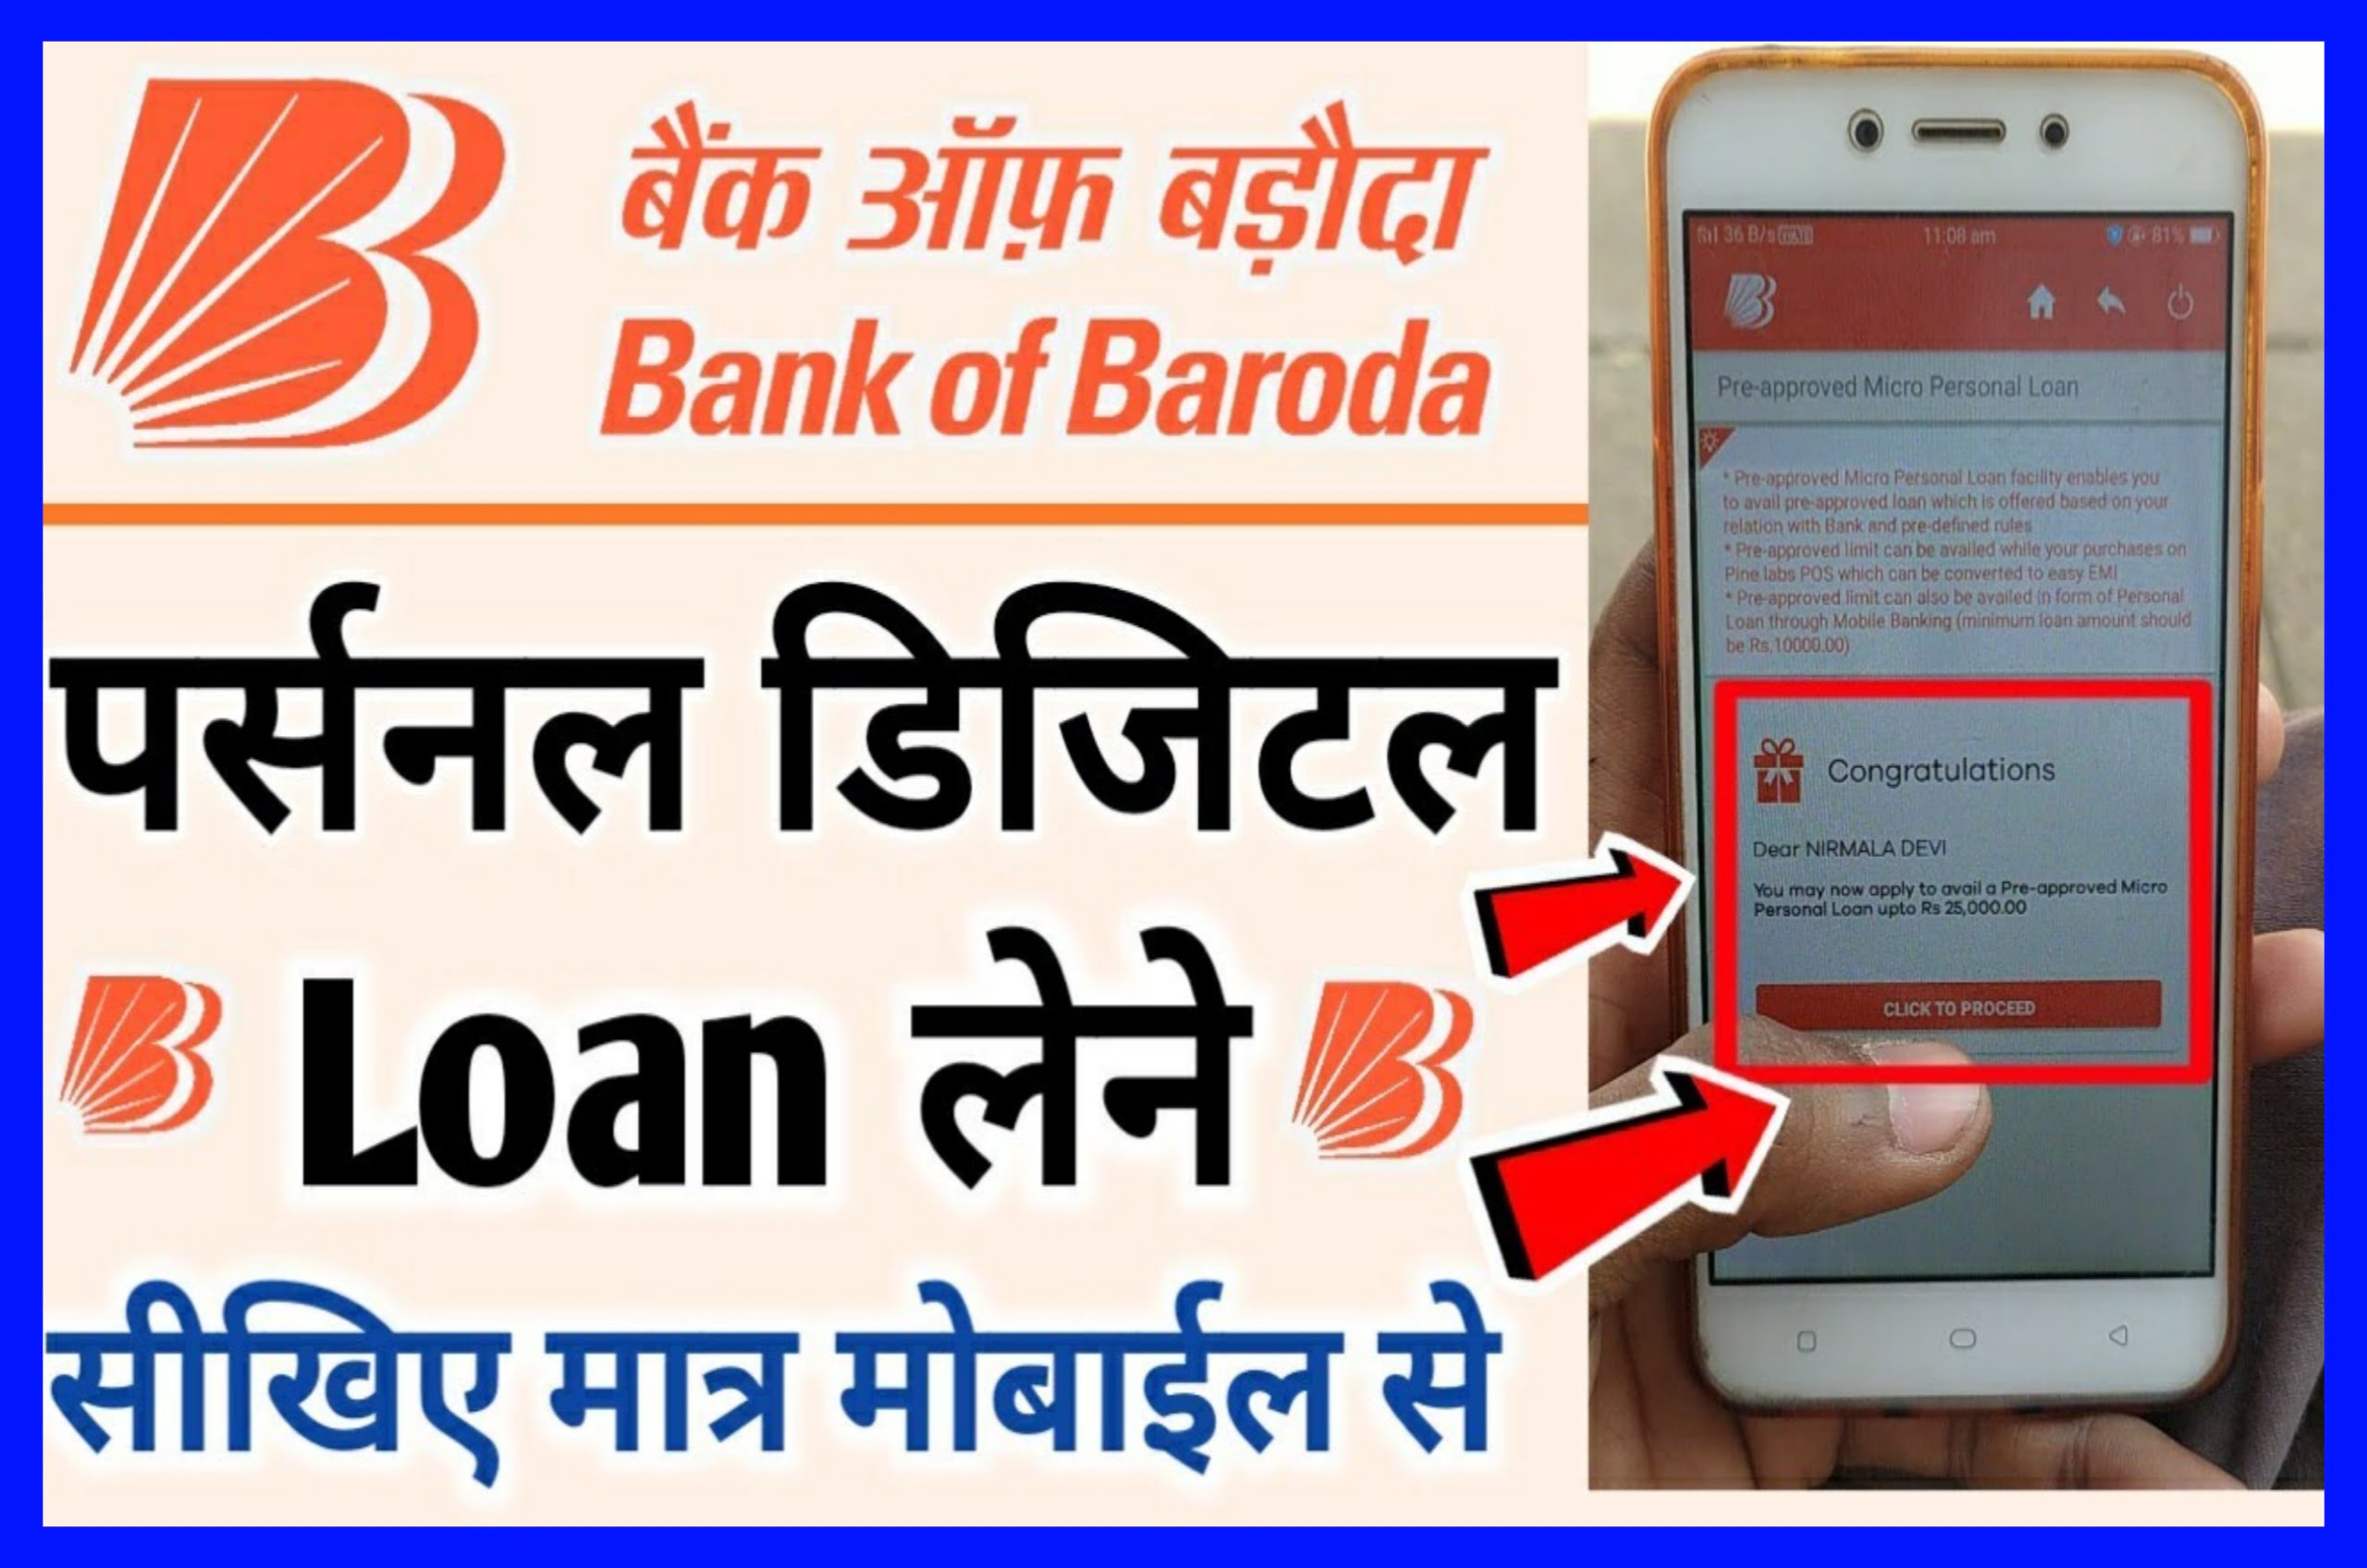 Bank of Baroda Digital Loan Apply - 50000 का लोन सीधे आपके बैंक अकाउंट में वह भी बिना बैंक जाए 